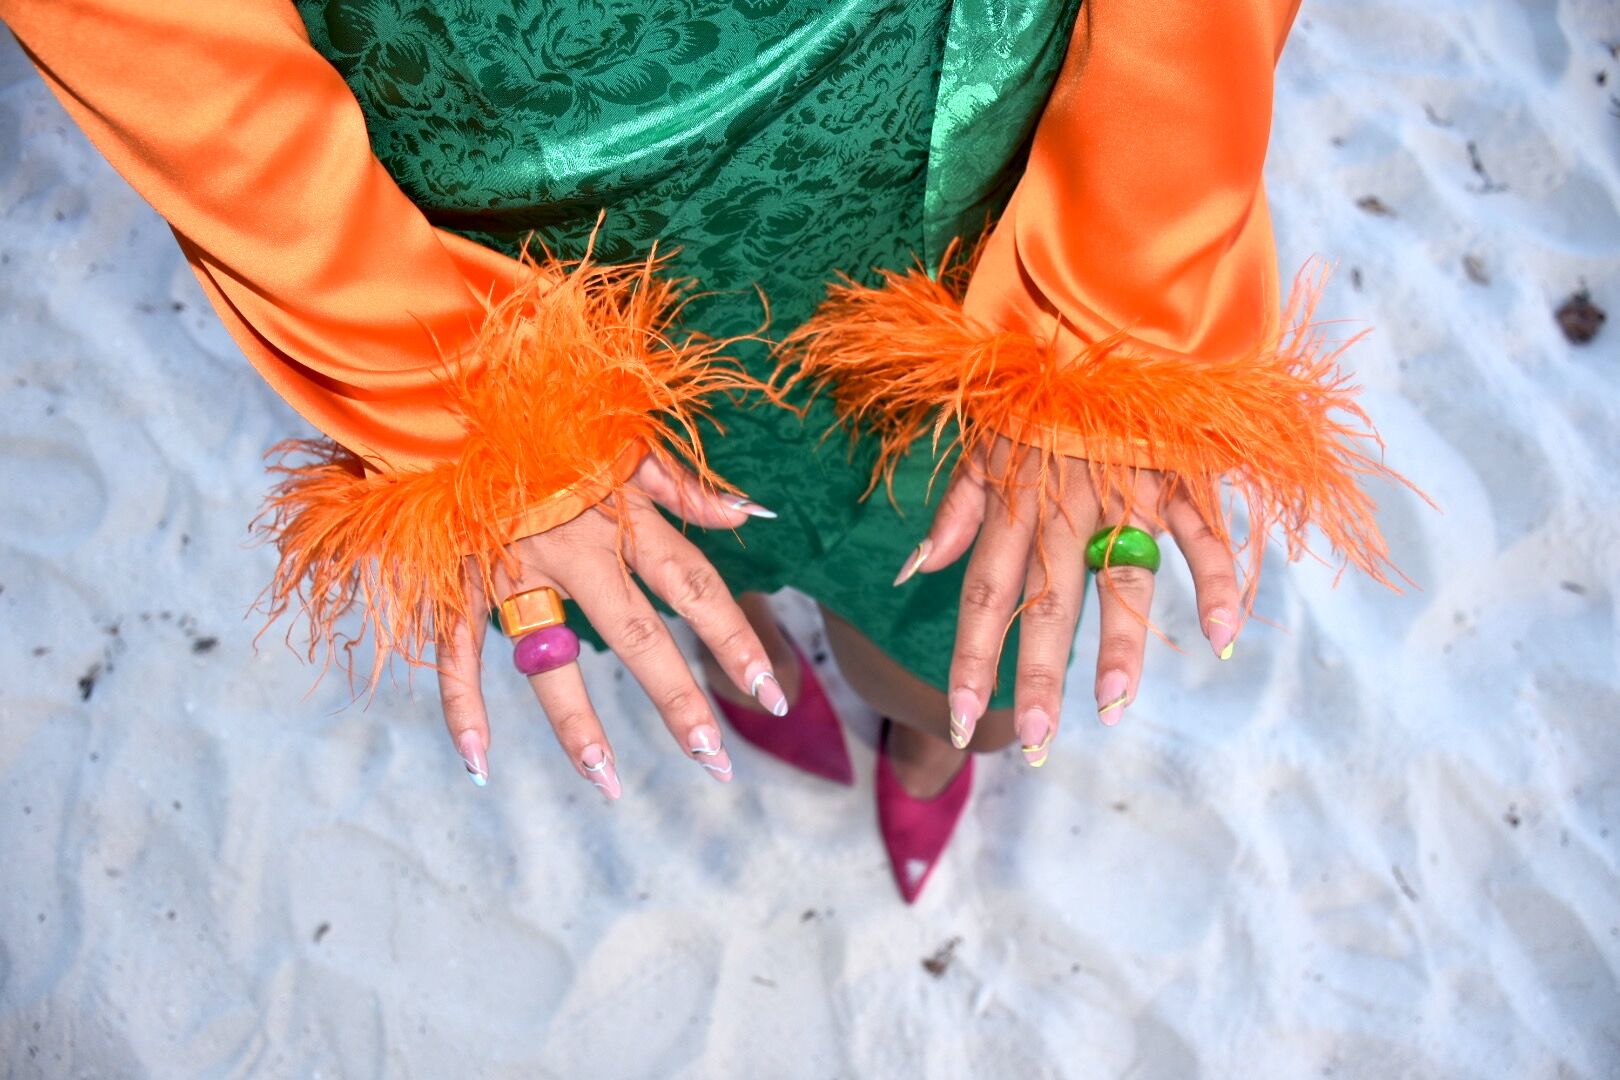 Bright summer nails! : r/Nails